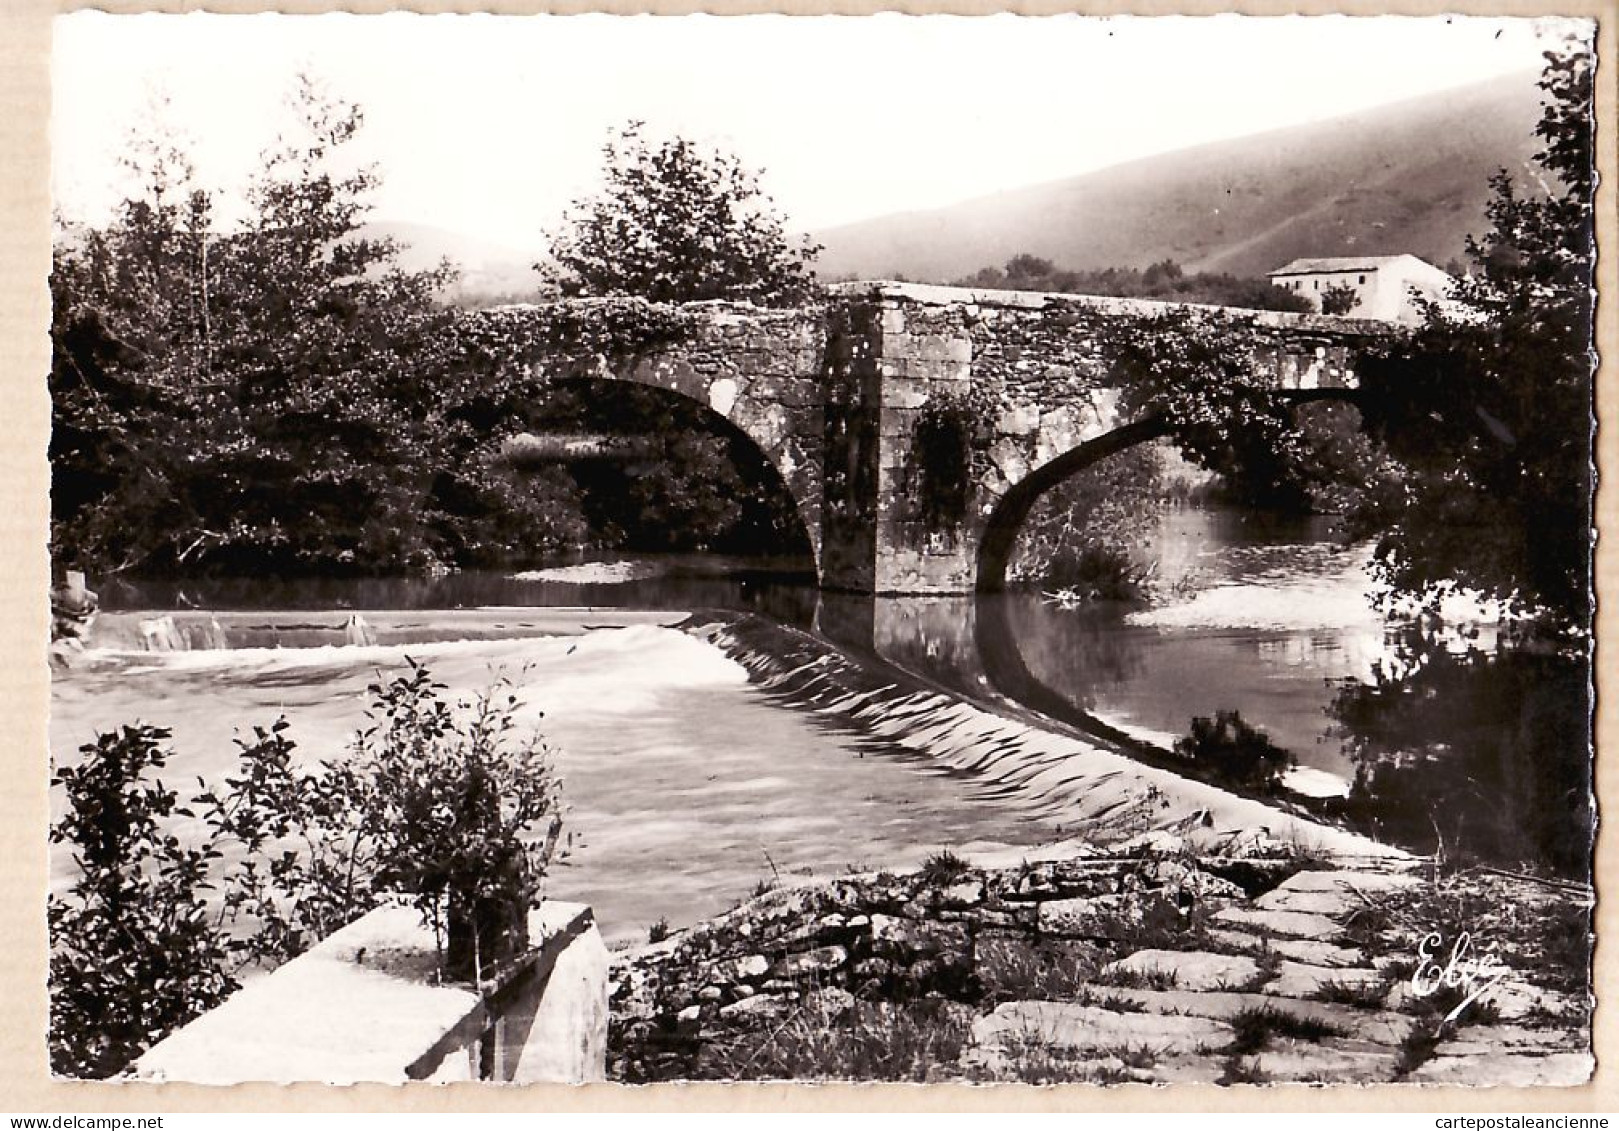 20782 / ⭐ ◉ CHATAGNEAU 10219 - ASCAIN 20.08.1951 Chaussée PAYS BASQUE Vieux Pont Romain - Véritable Photo Bromure - Ascain